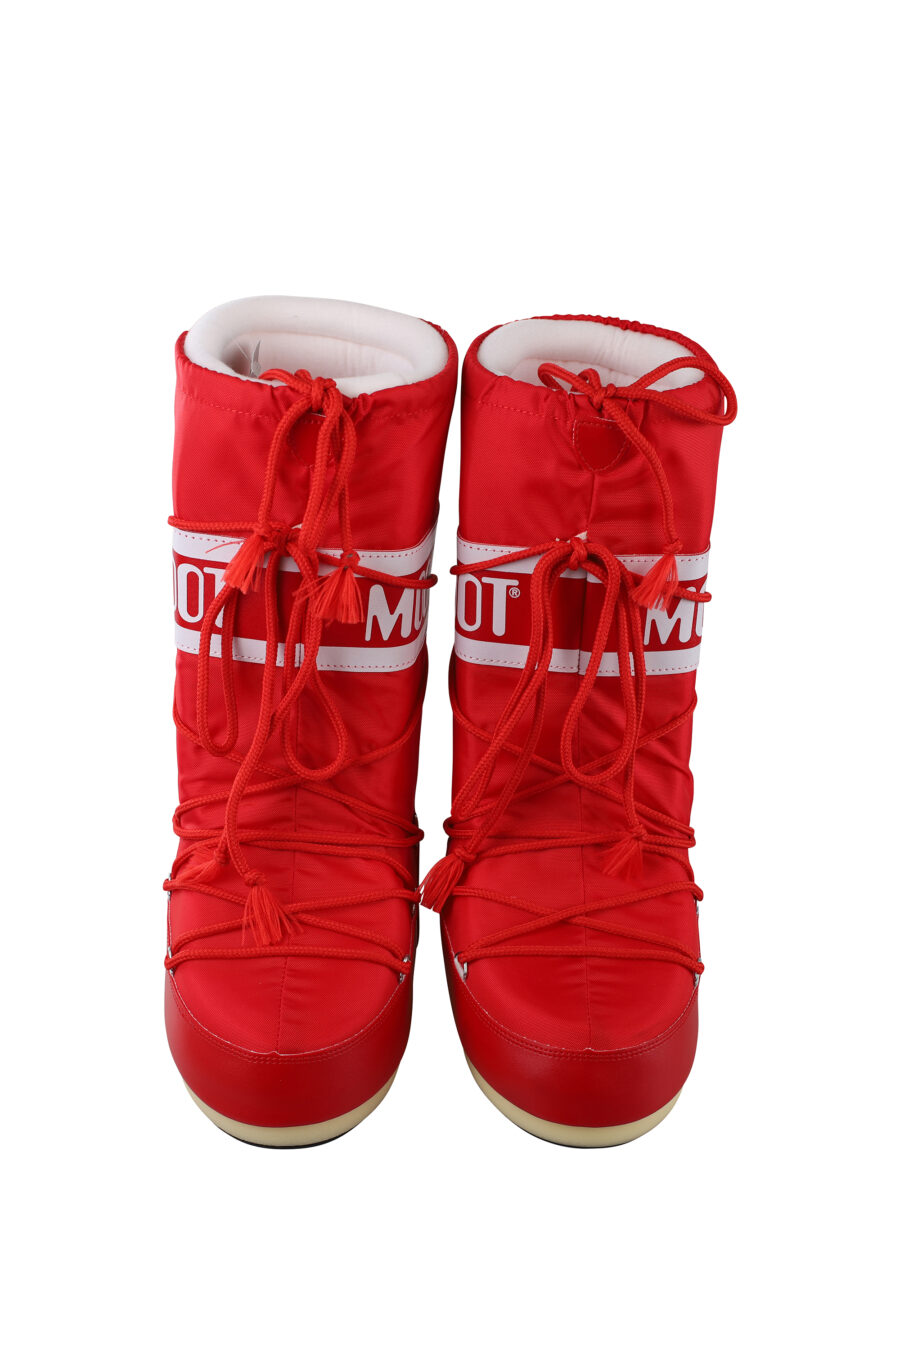 Botas de nieve rojas con logo blanco - IMG 6702